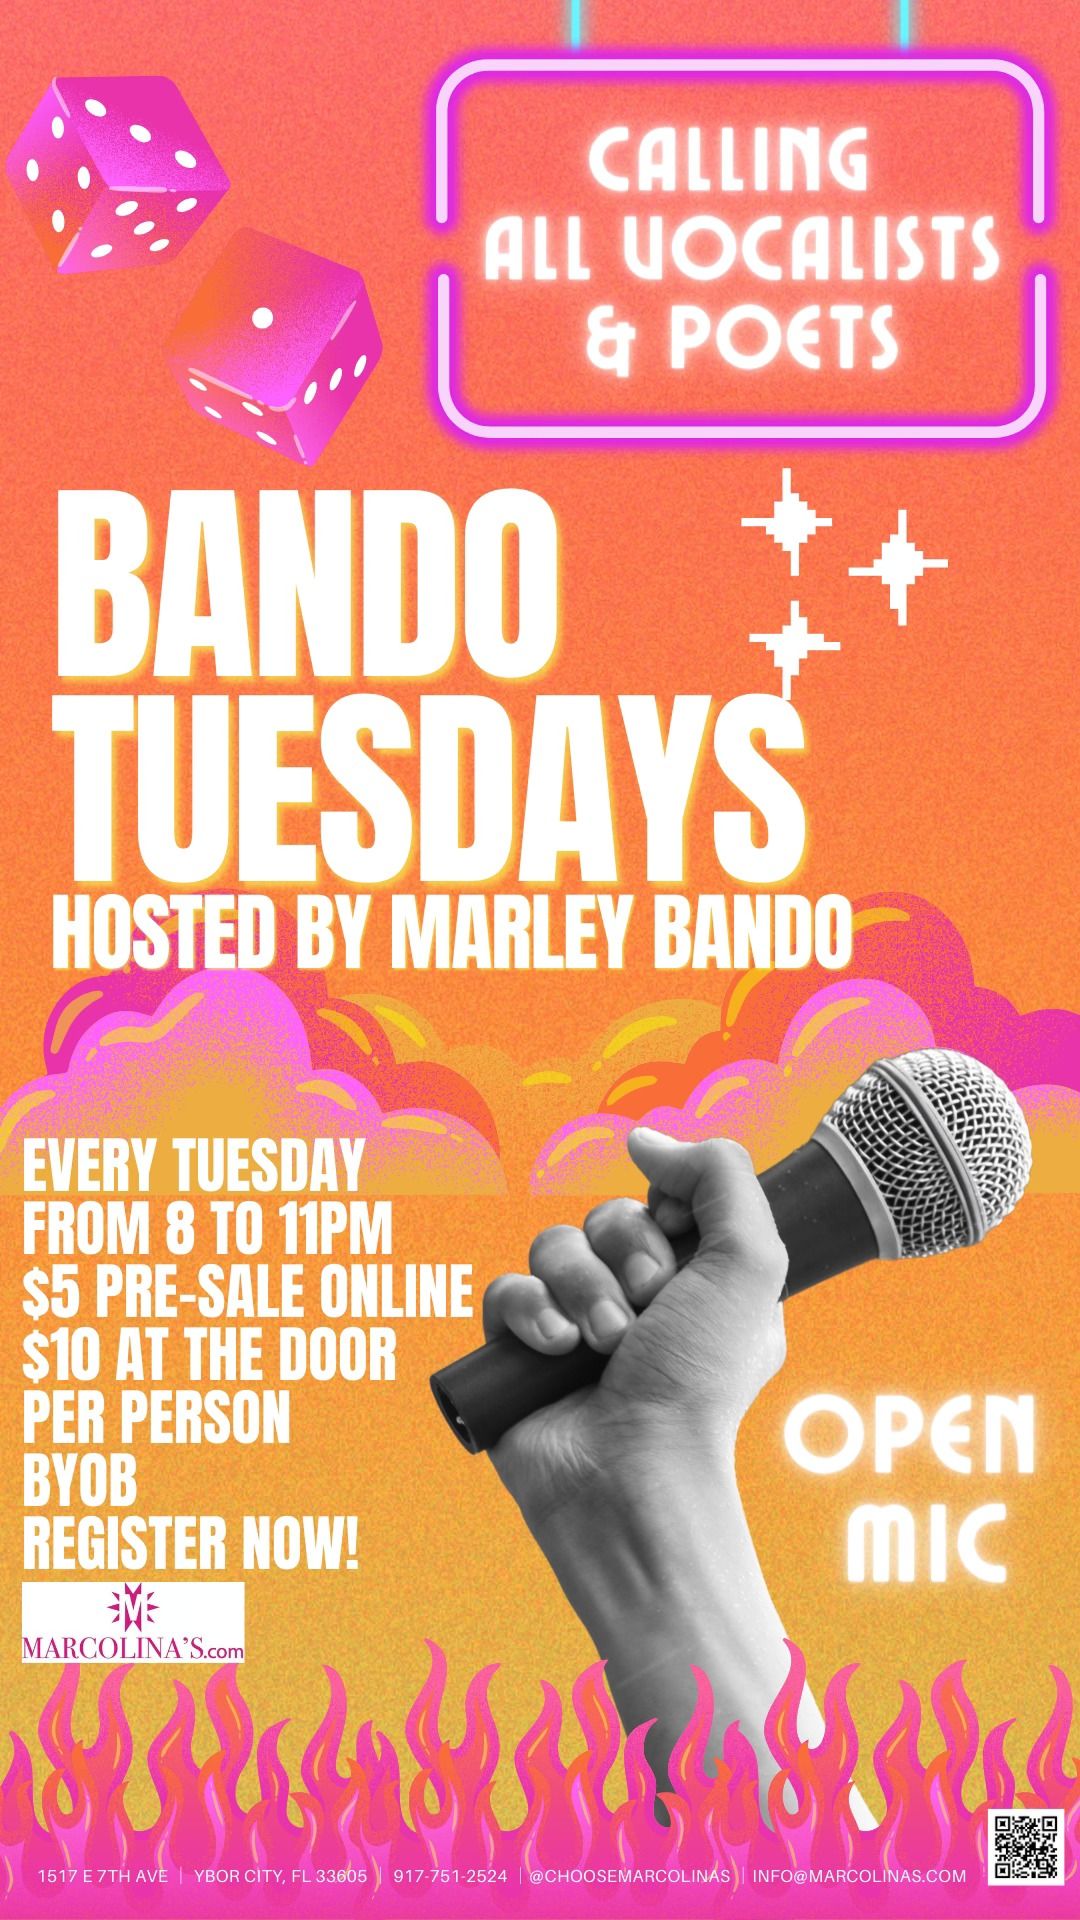 Bando Tuesdays Open Mic